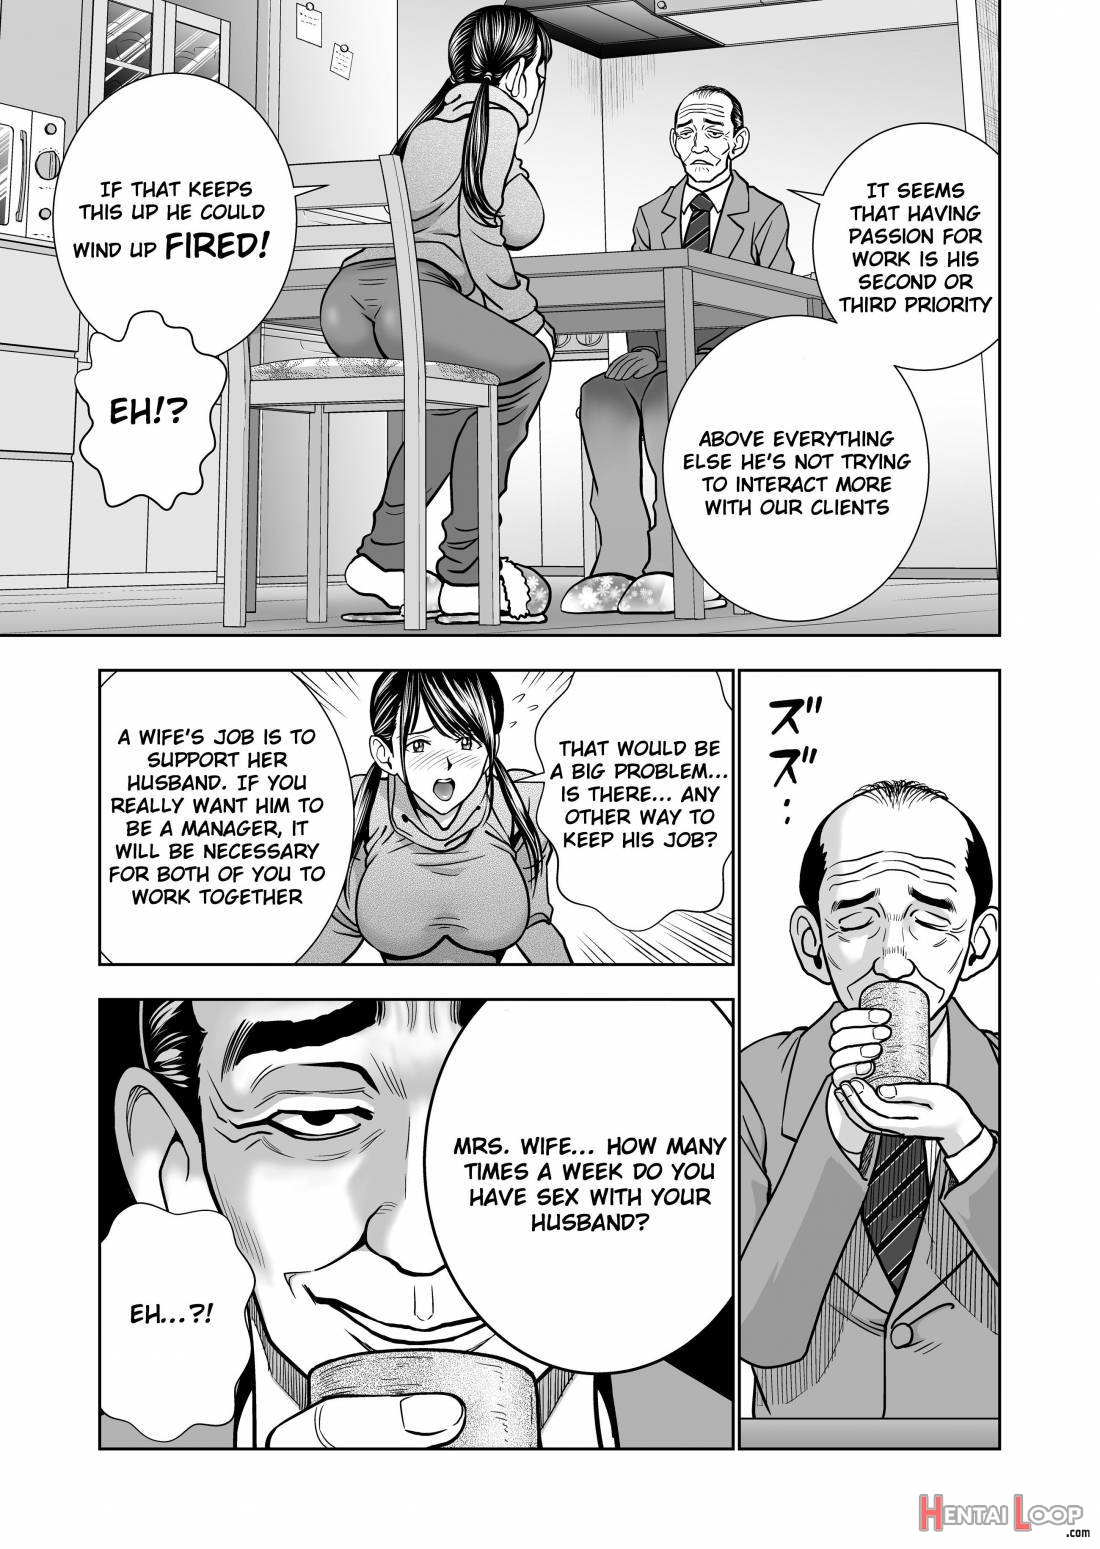 Seisenzuma no Hinkaku page 7